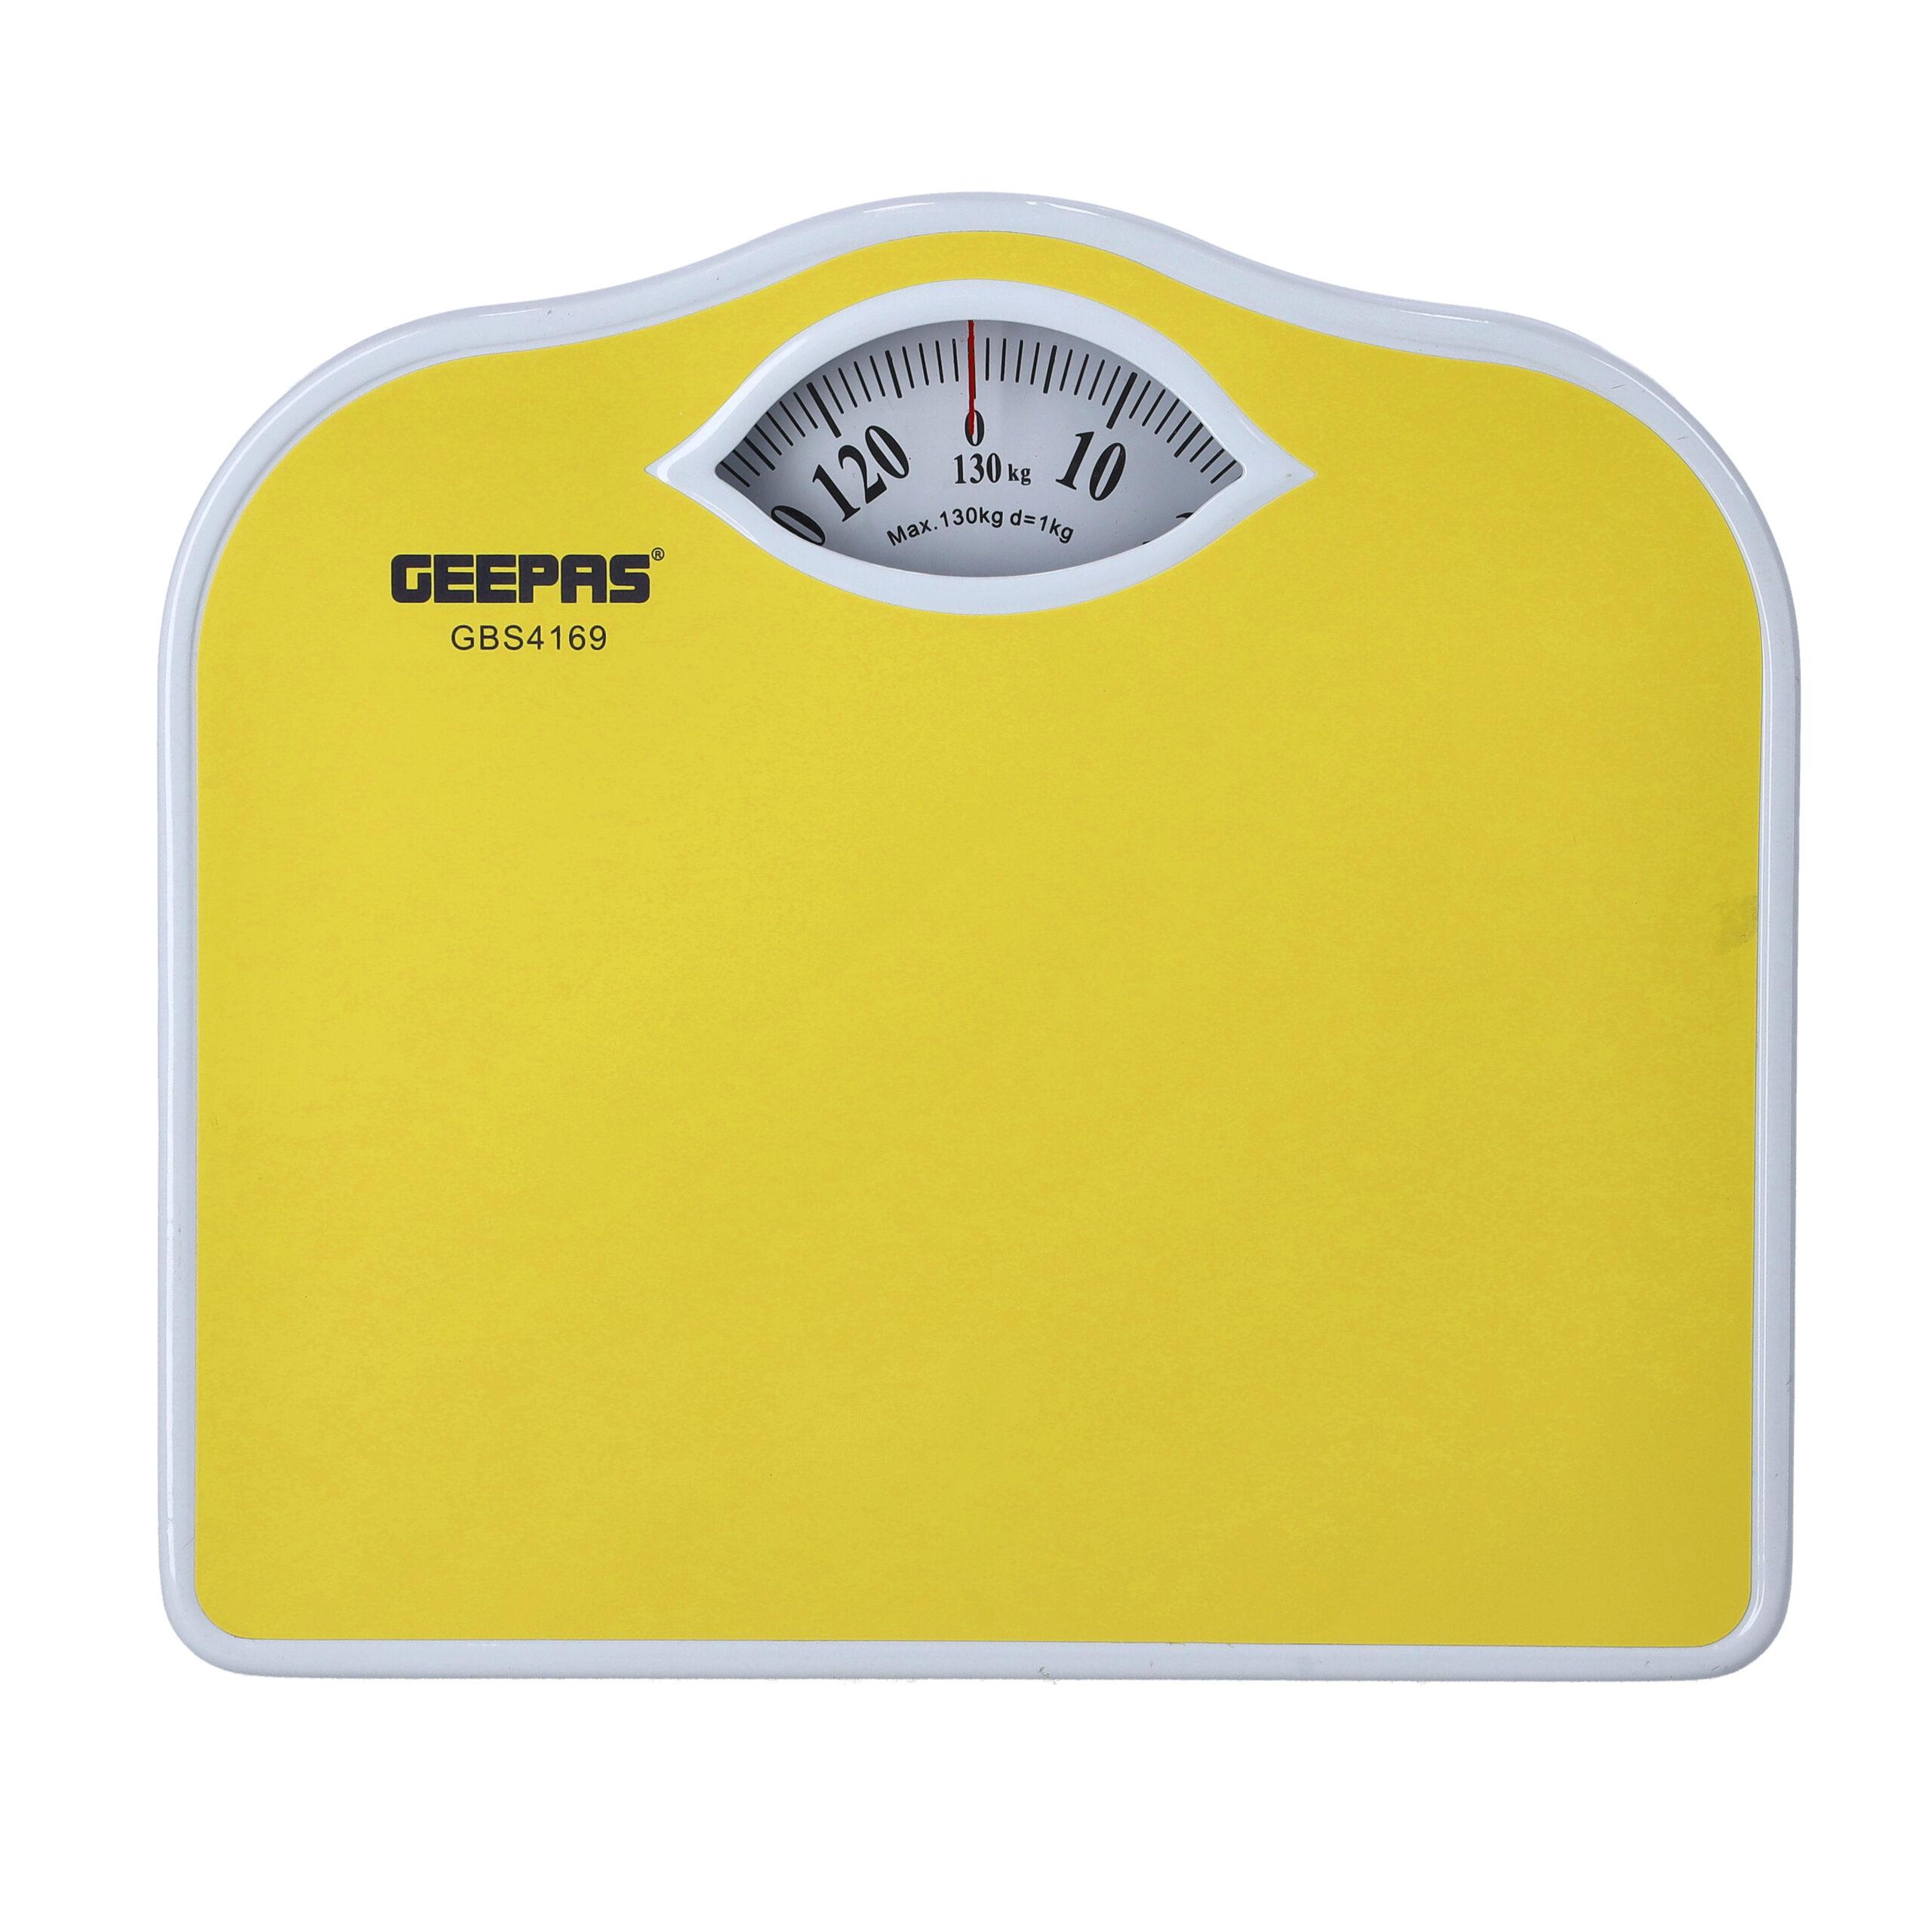 Geepas Weighing Machine GBS4169